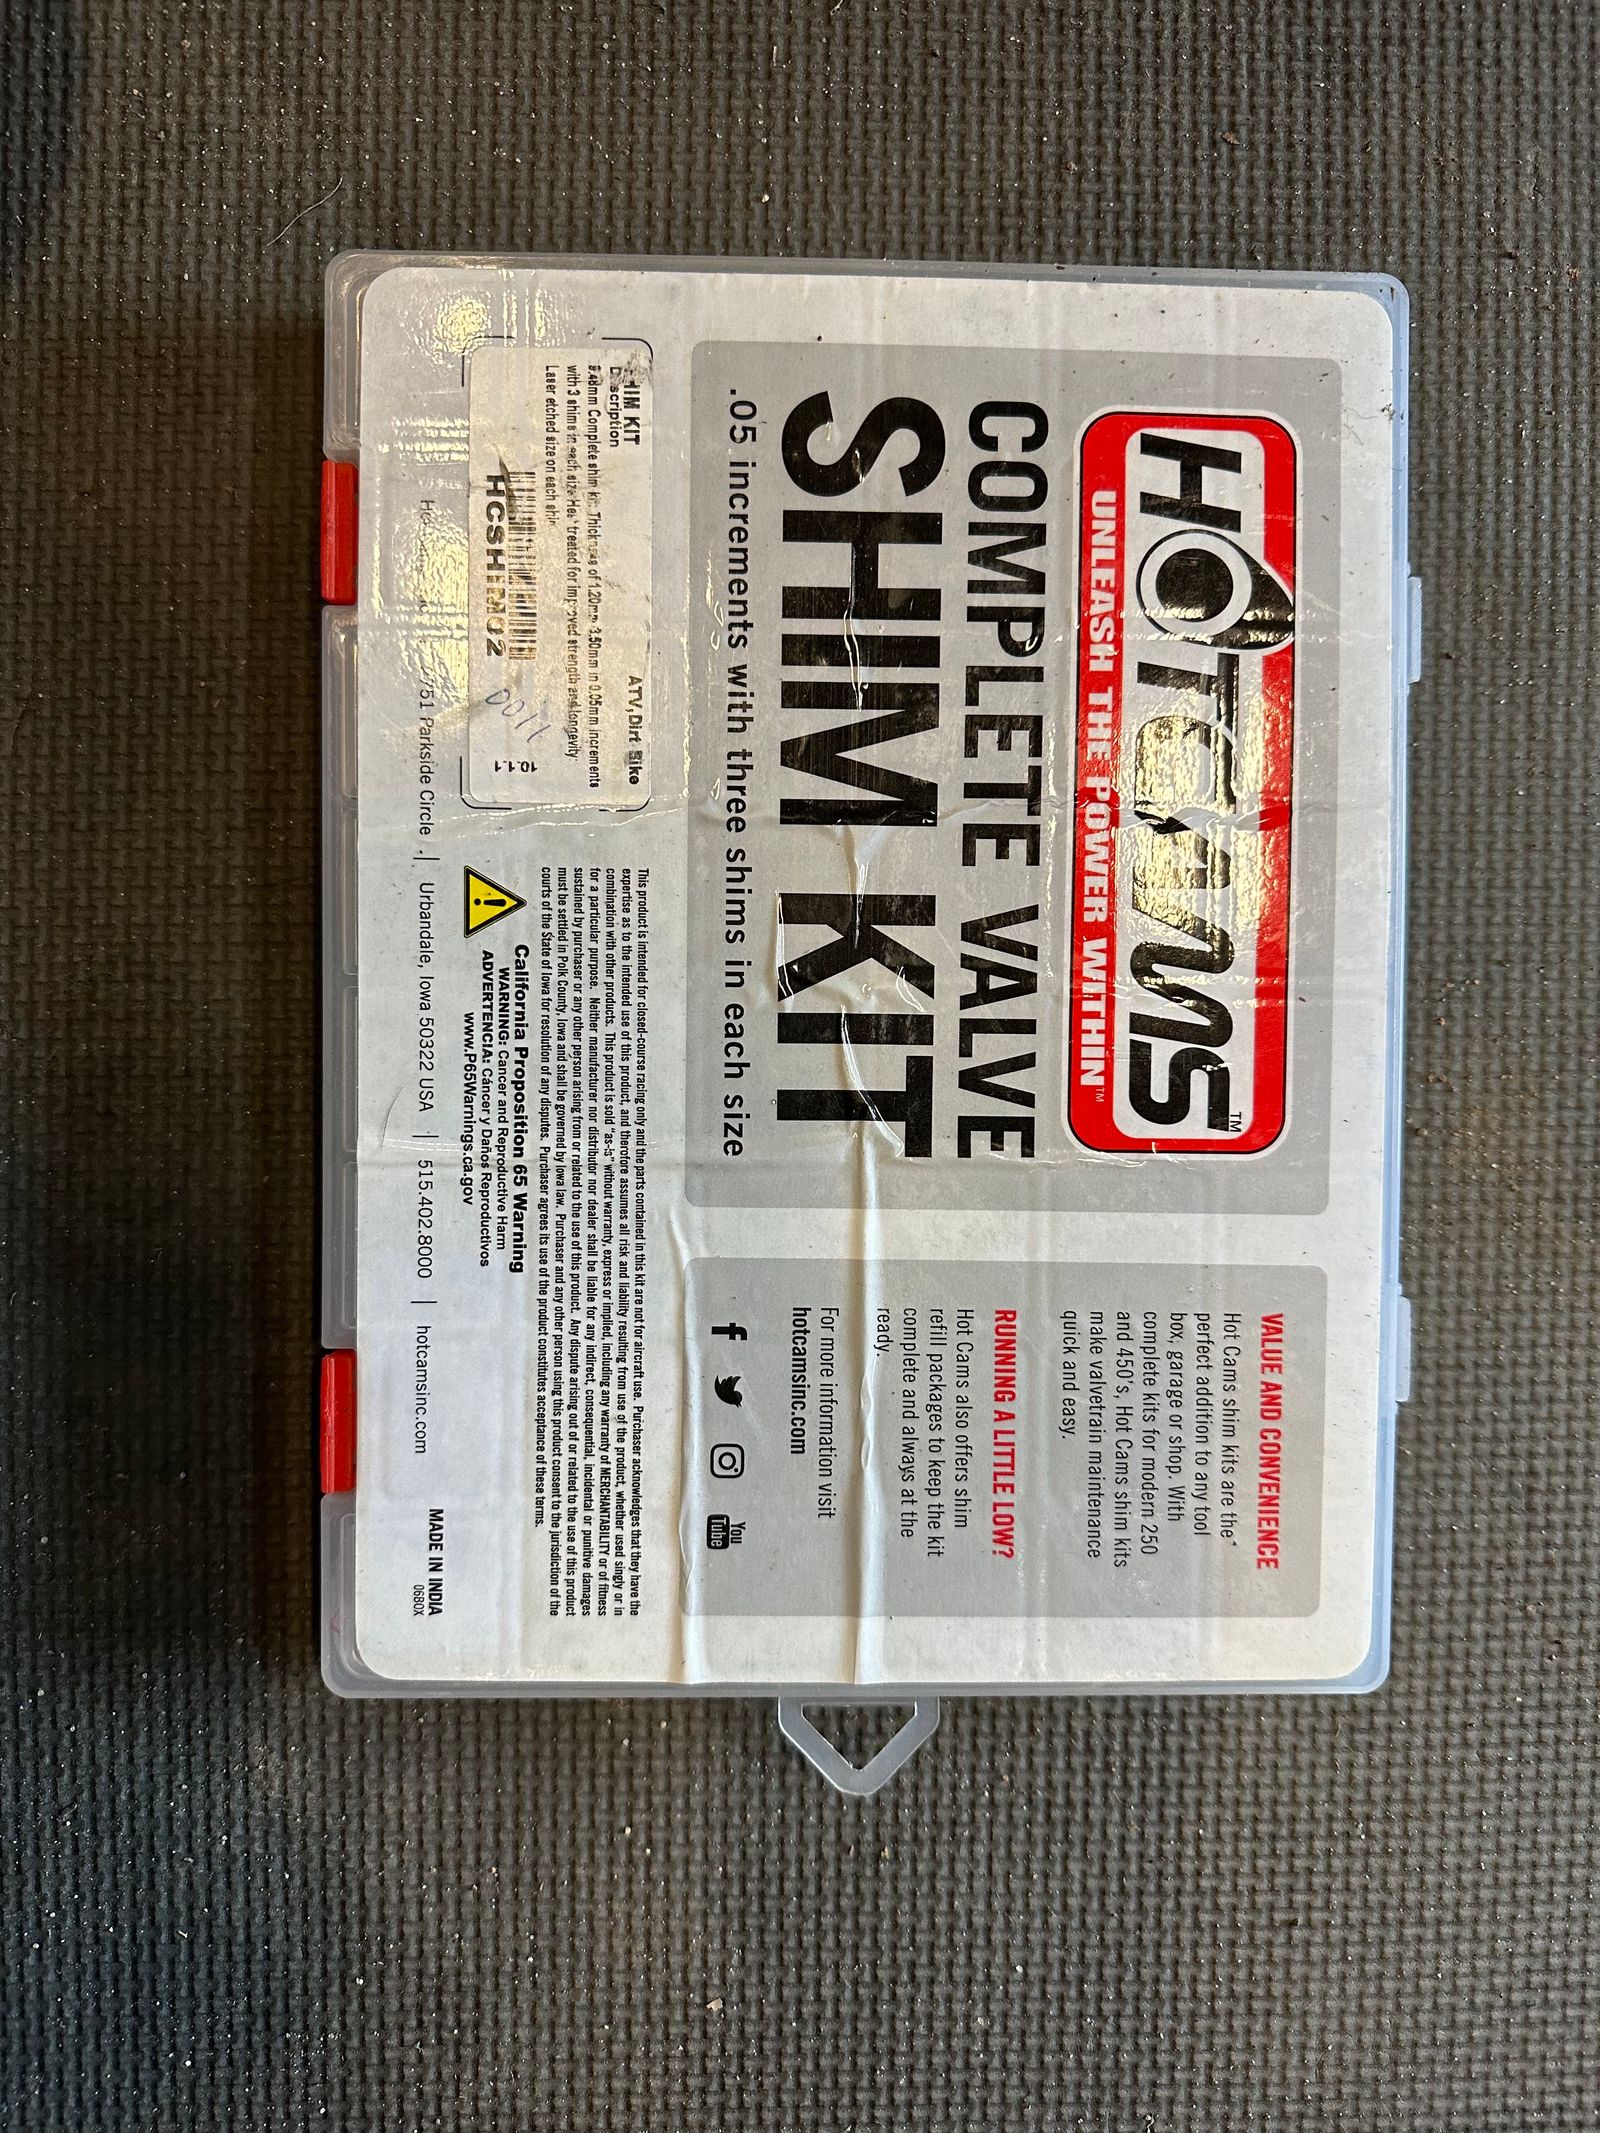 Hot Cams Shim Kit 9.48mm Valve Shim, 3.50mm MX Locker